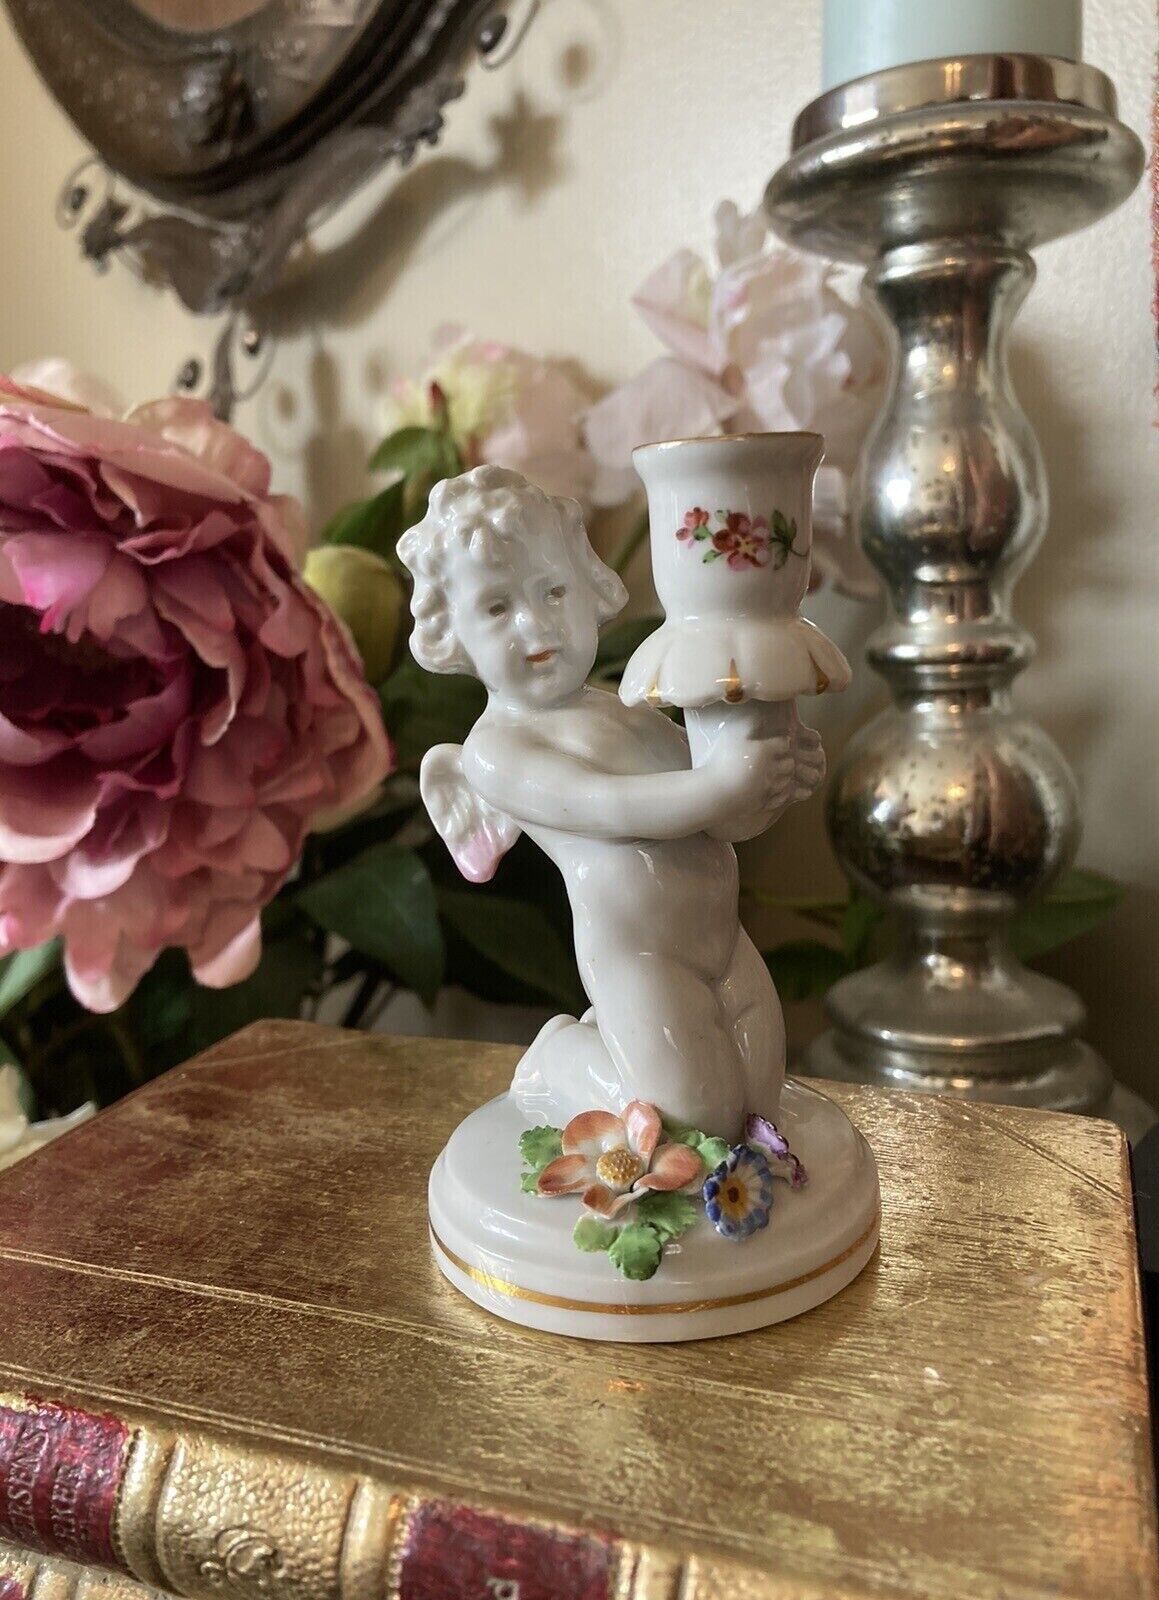 Antique German Von Schierholz Small Porcelain Cherub Figurine Candle Holder 4.5